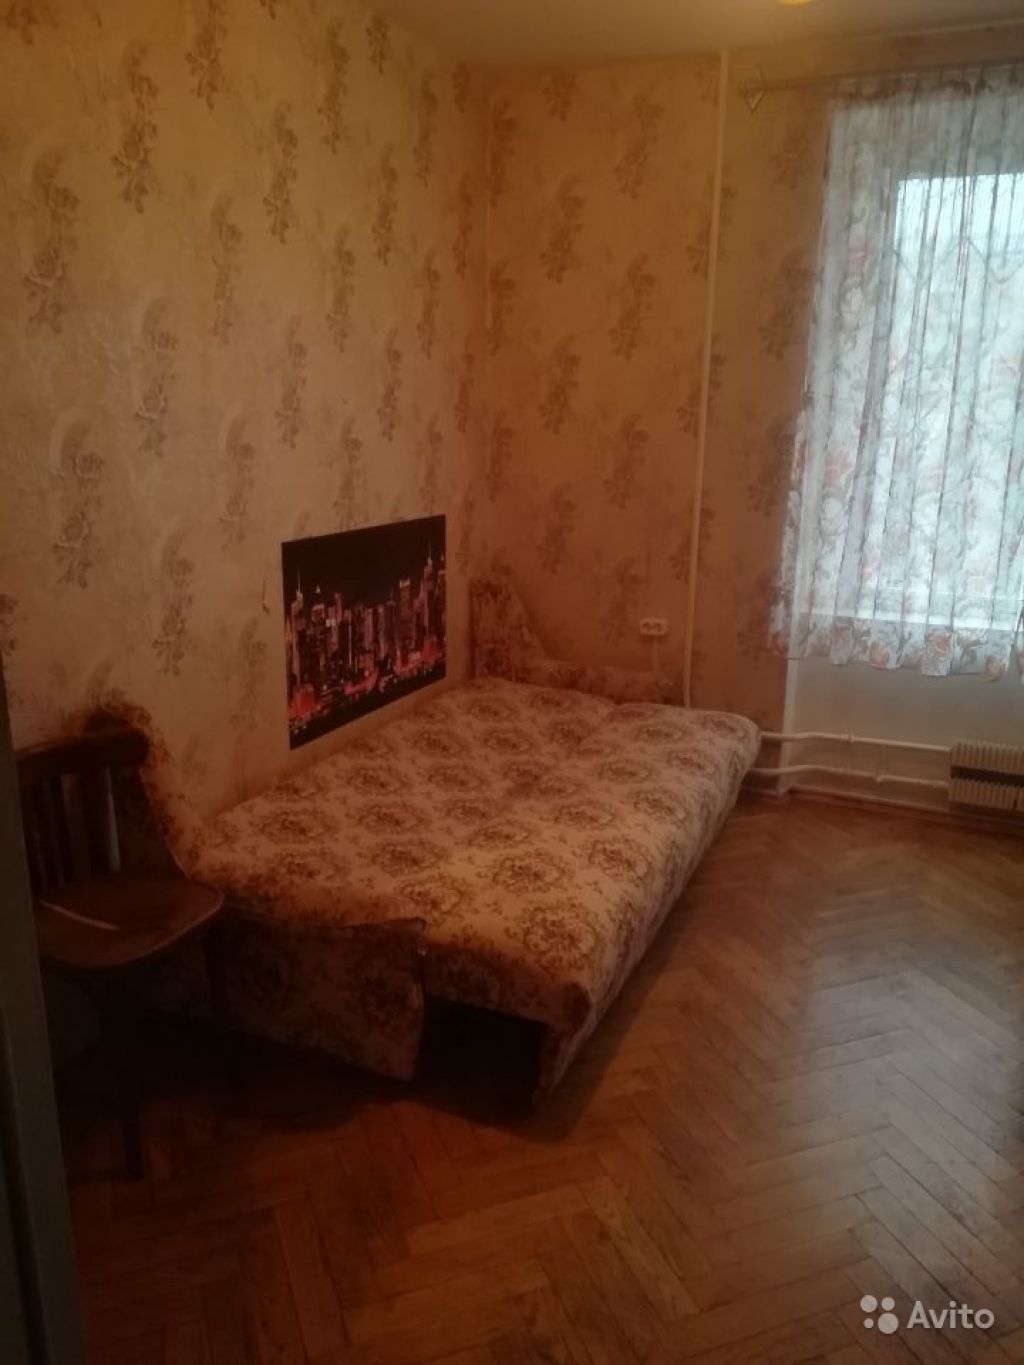 Сдам комнату Комната 10 м² в 2-к квартире на 1 этаже 12-этажного панельного дома в Москве. Фото 1